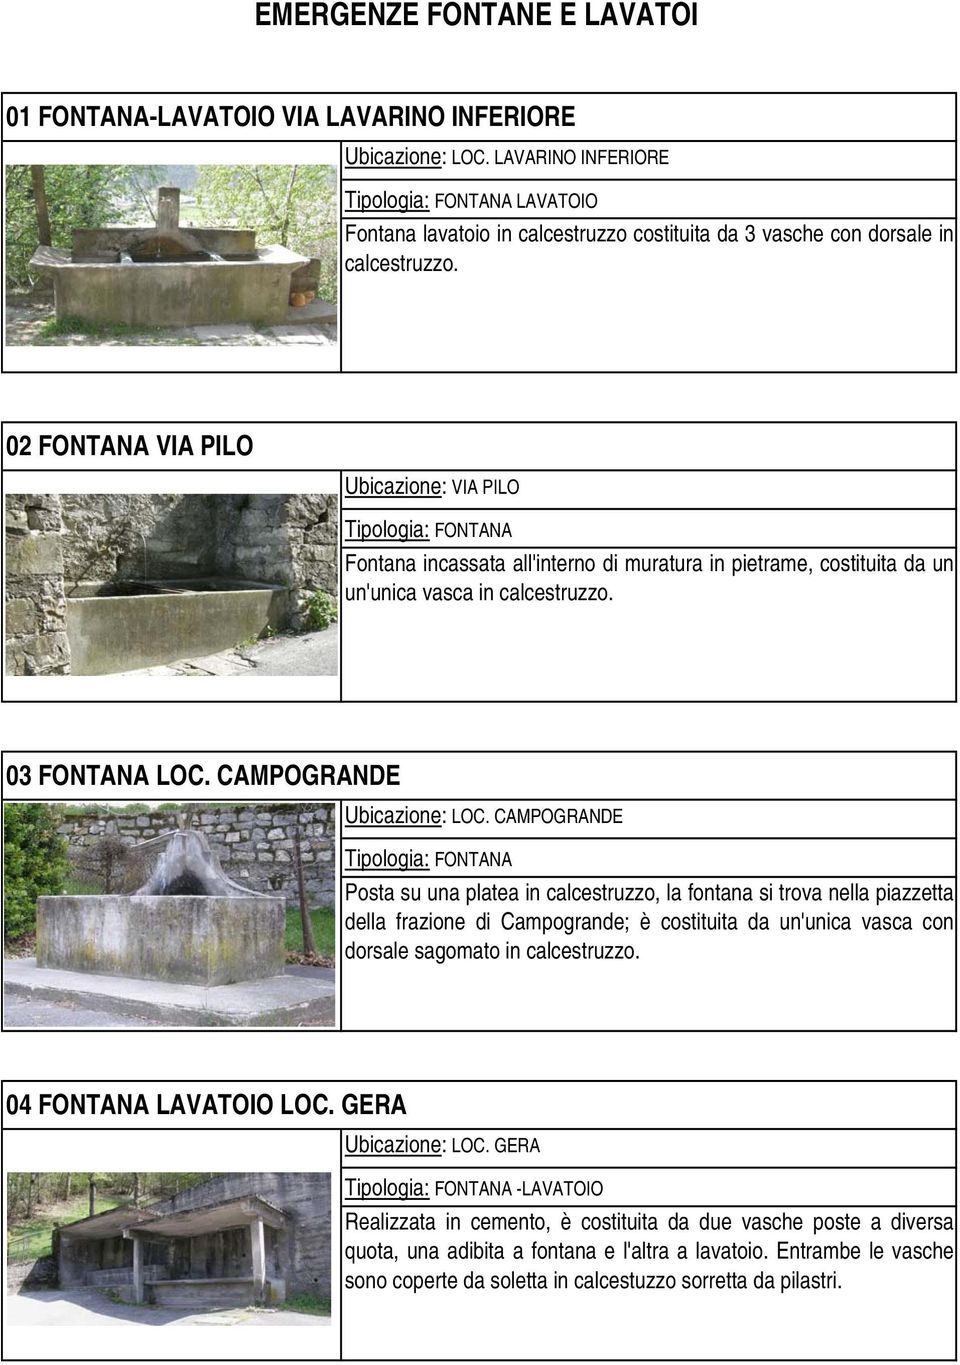 CAMPOGRANDE Posta su una platea in calcestruzzo, la fontana si trova nella piazzetta della frazione di Campogrande; è costituita da un'unica vasca con dorsale sagomato in calcestruzzo.